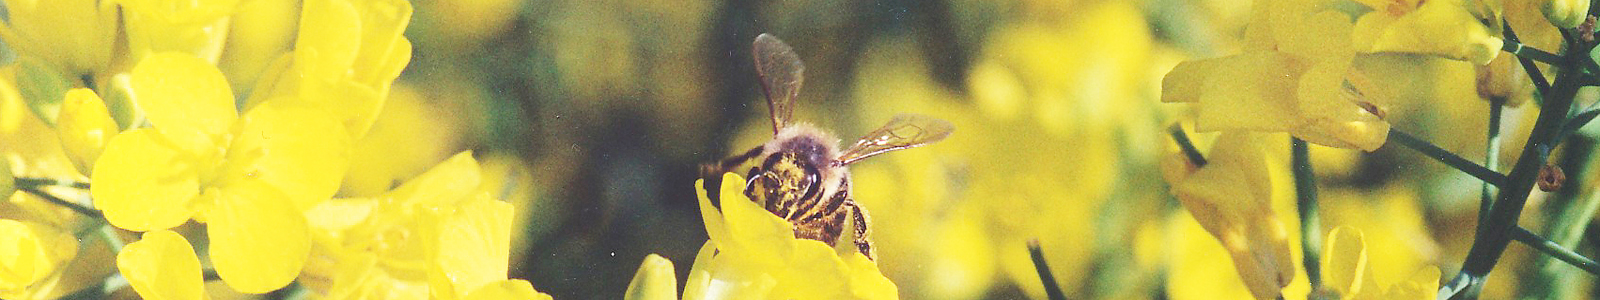 Biene auf gelber Blüte  ©DLR